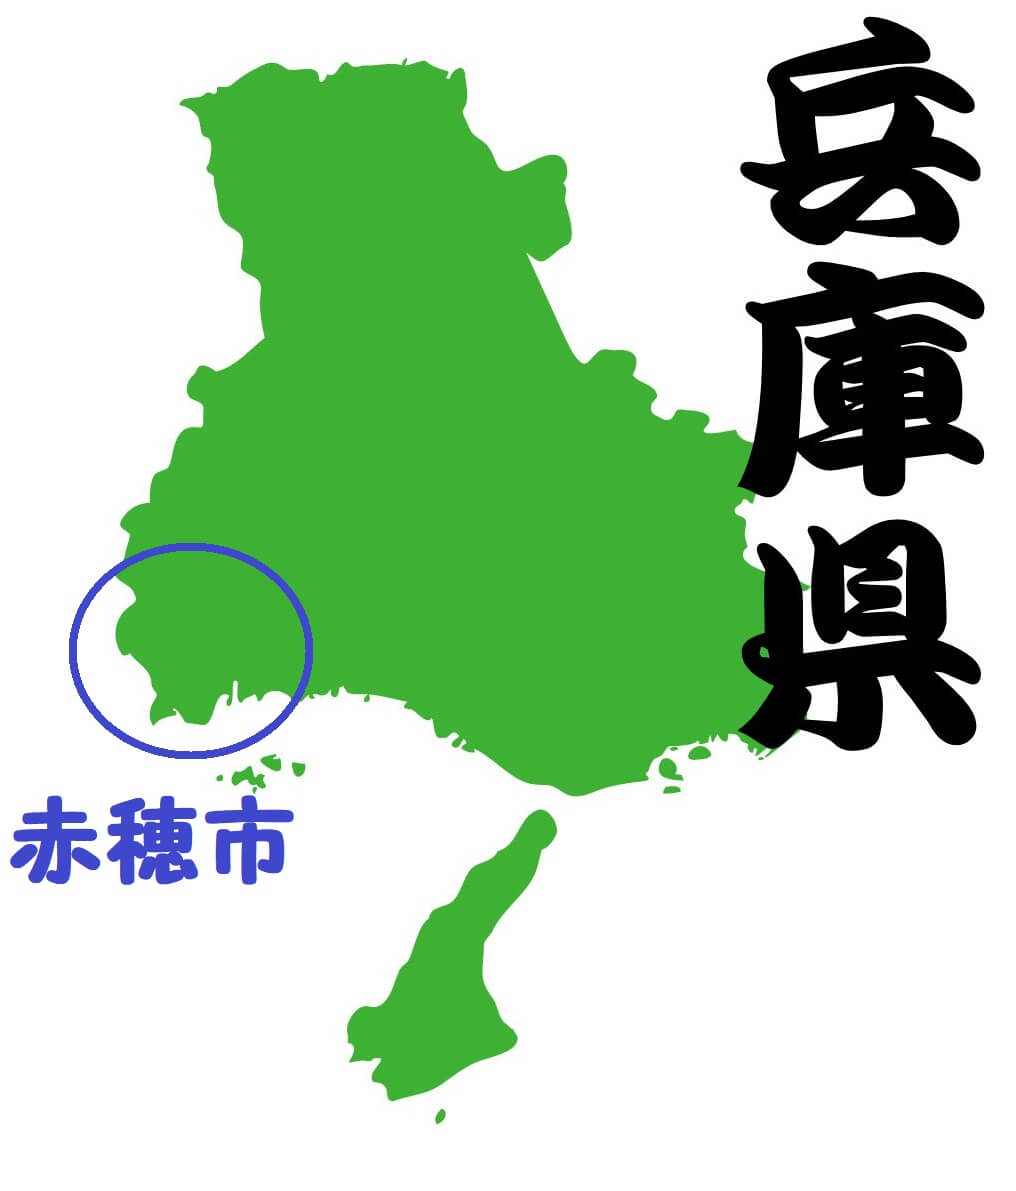 兵庫県における赤穂市の場所を説明する地図